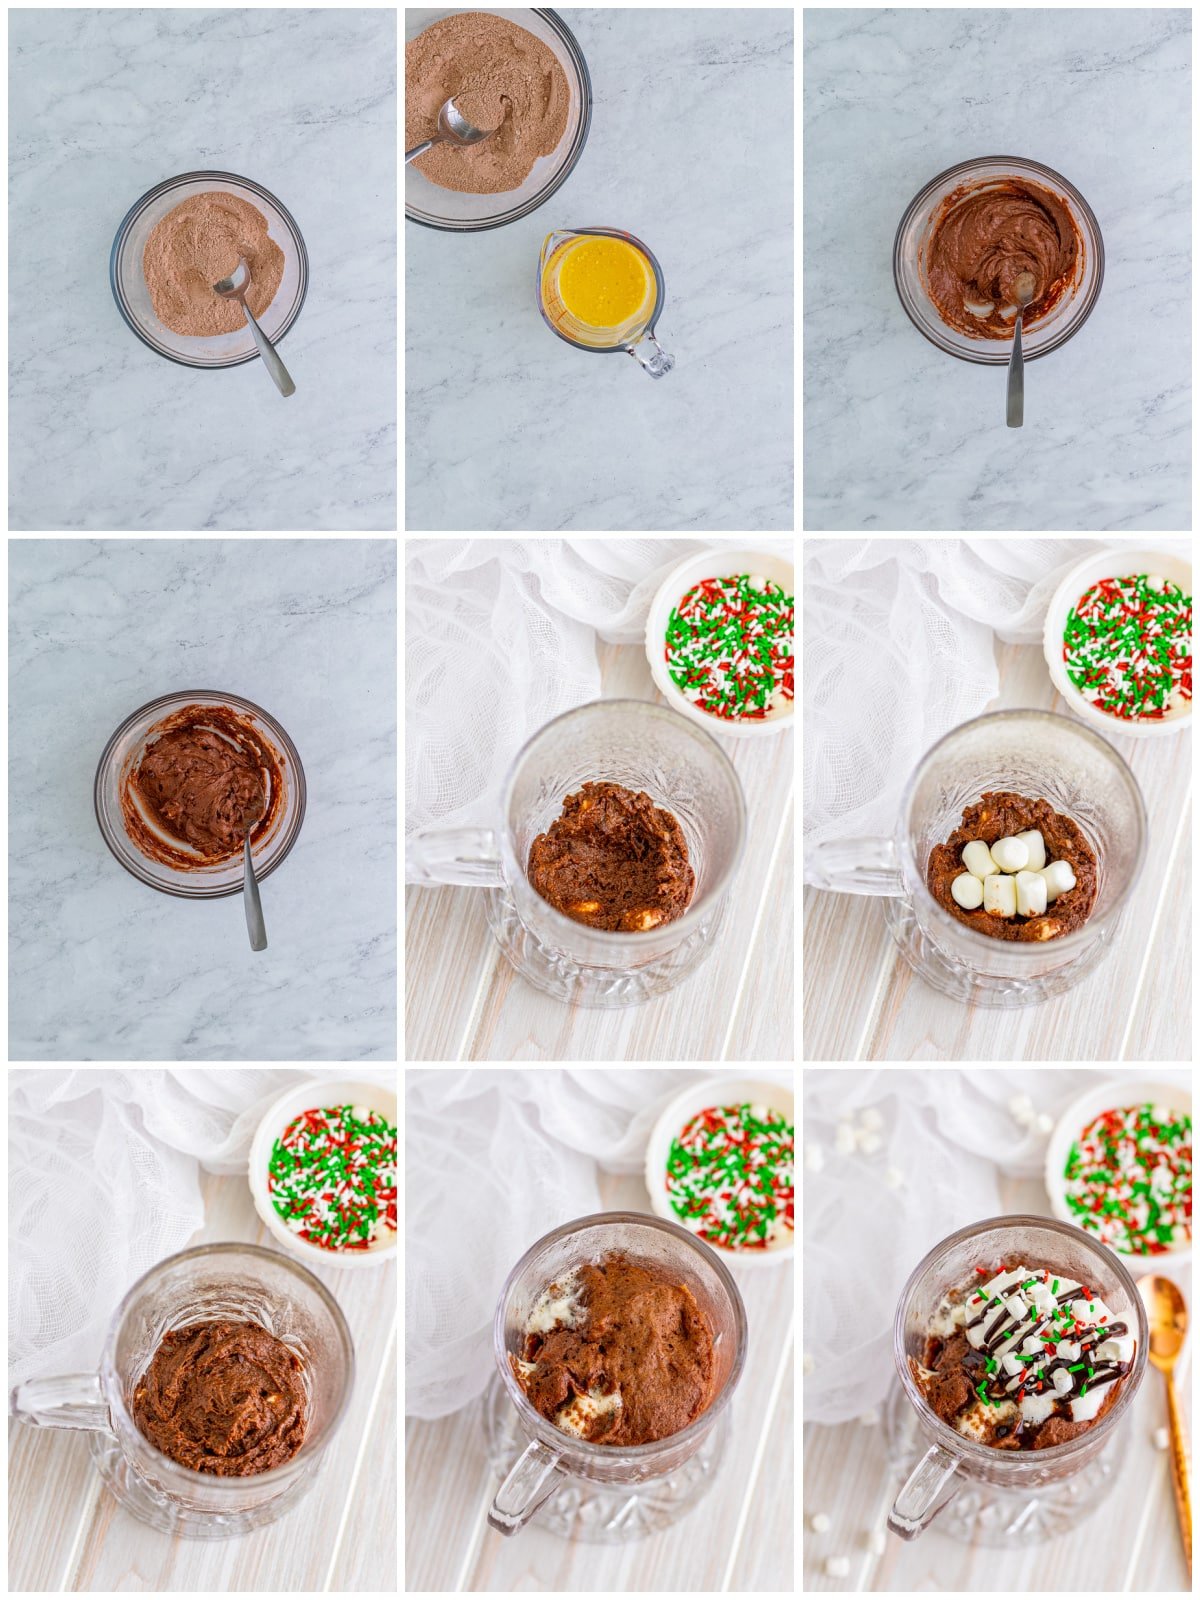 Step by step photos on how to make a Hot Chocolate Mug Cake.